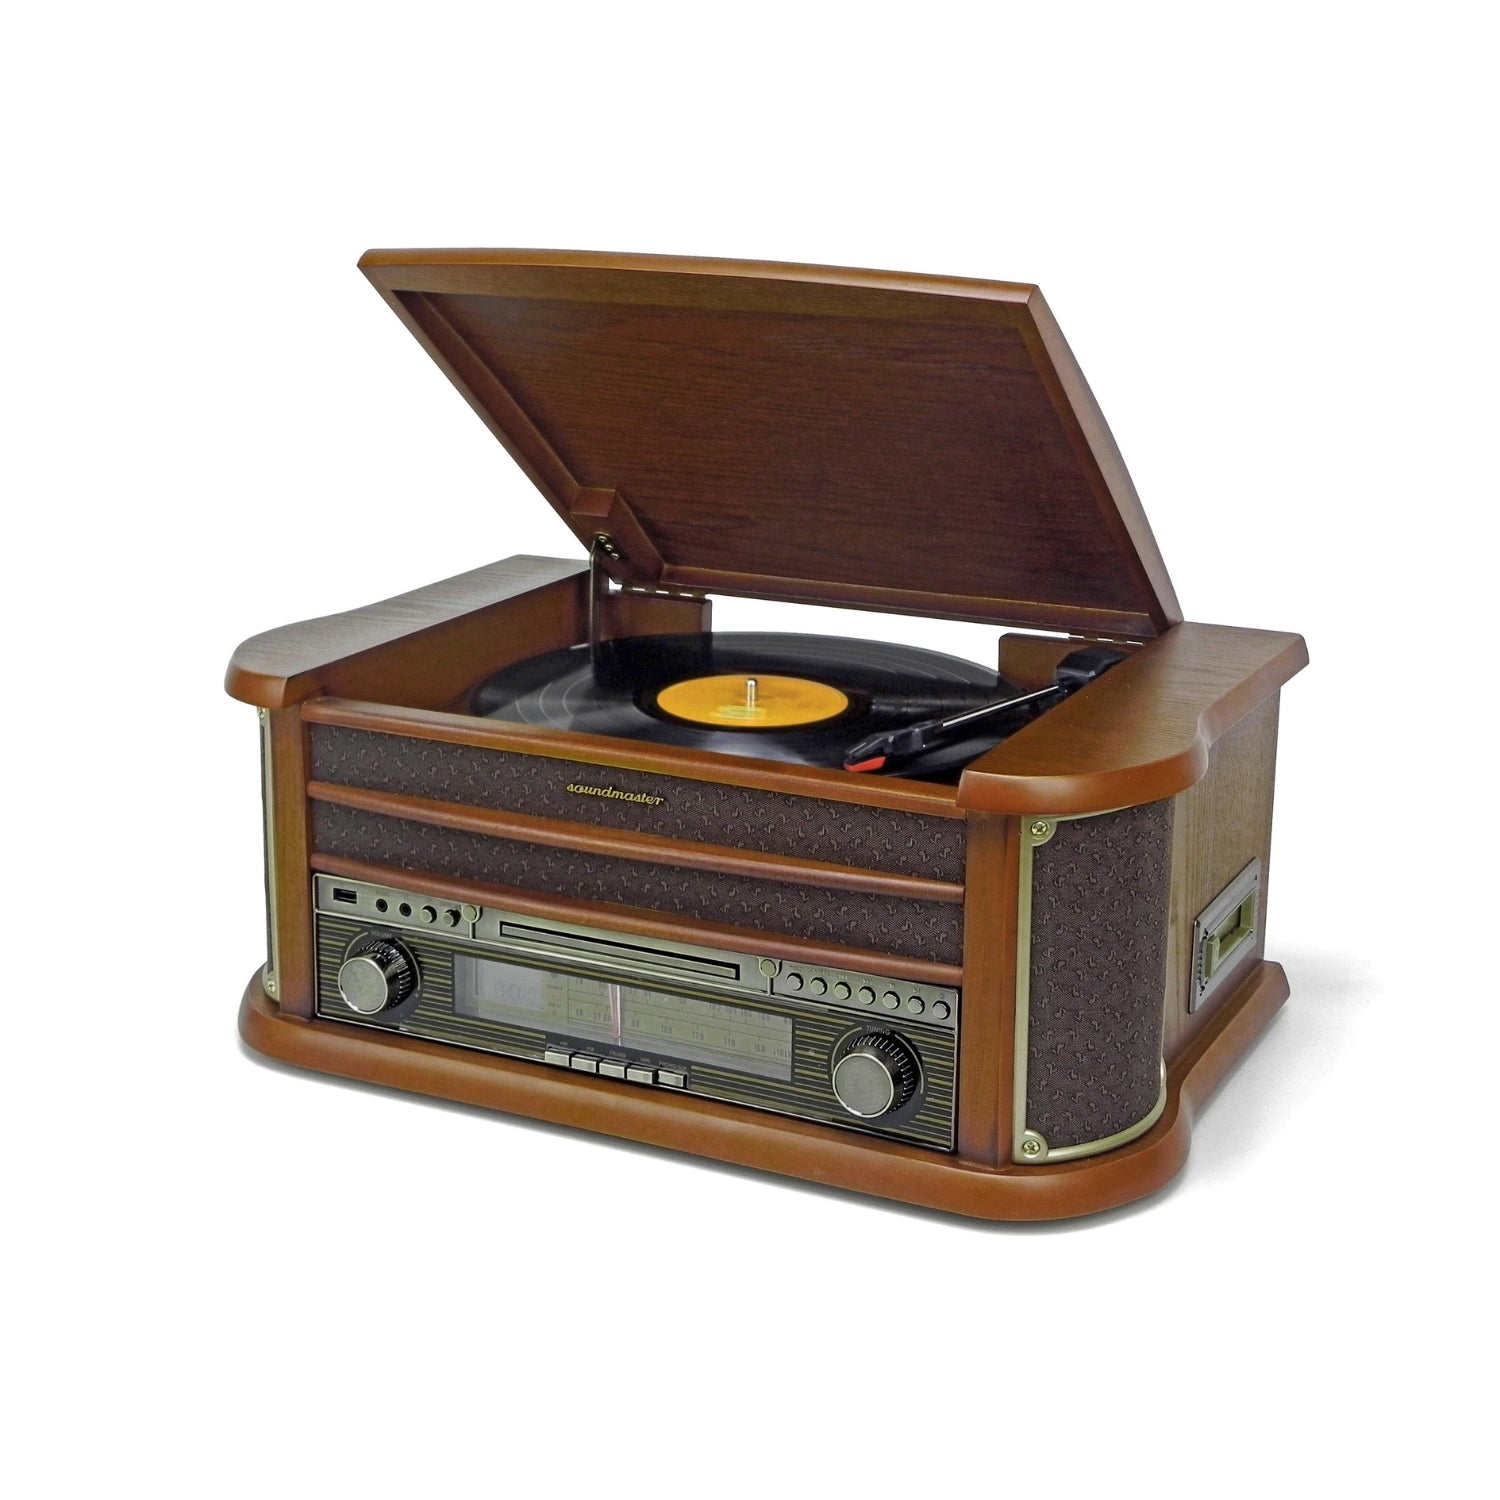 Soundmaster NR560 système stéréo nostalgique système compact platine vinyle lecteur CD MP3 encodage USB lecteur cassette connexion 75 Ohm